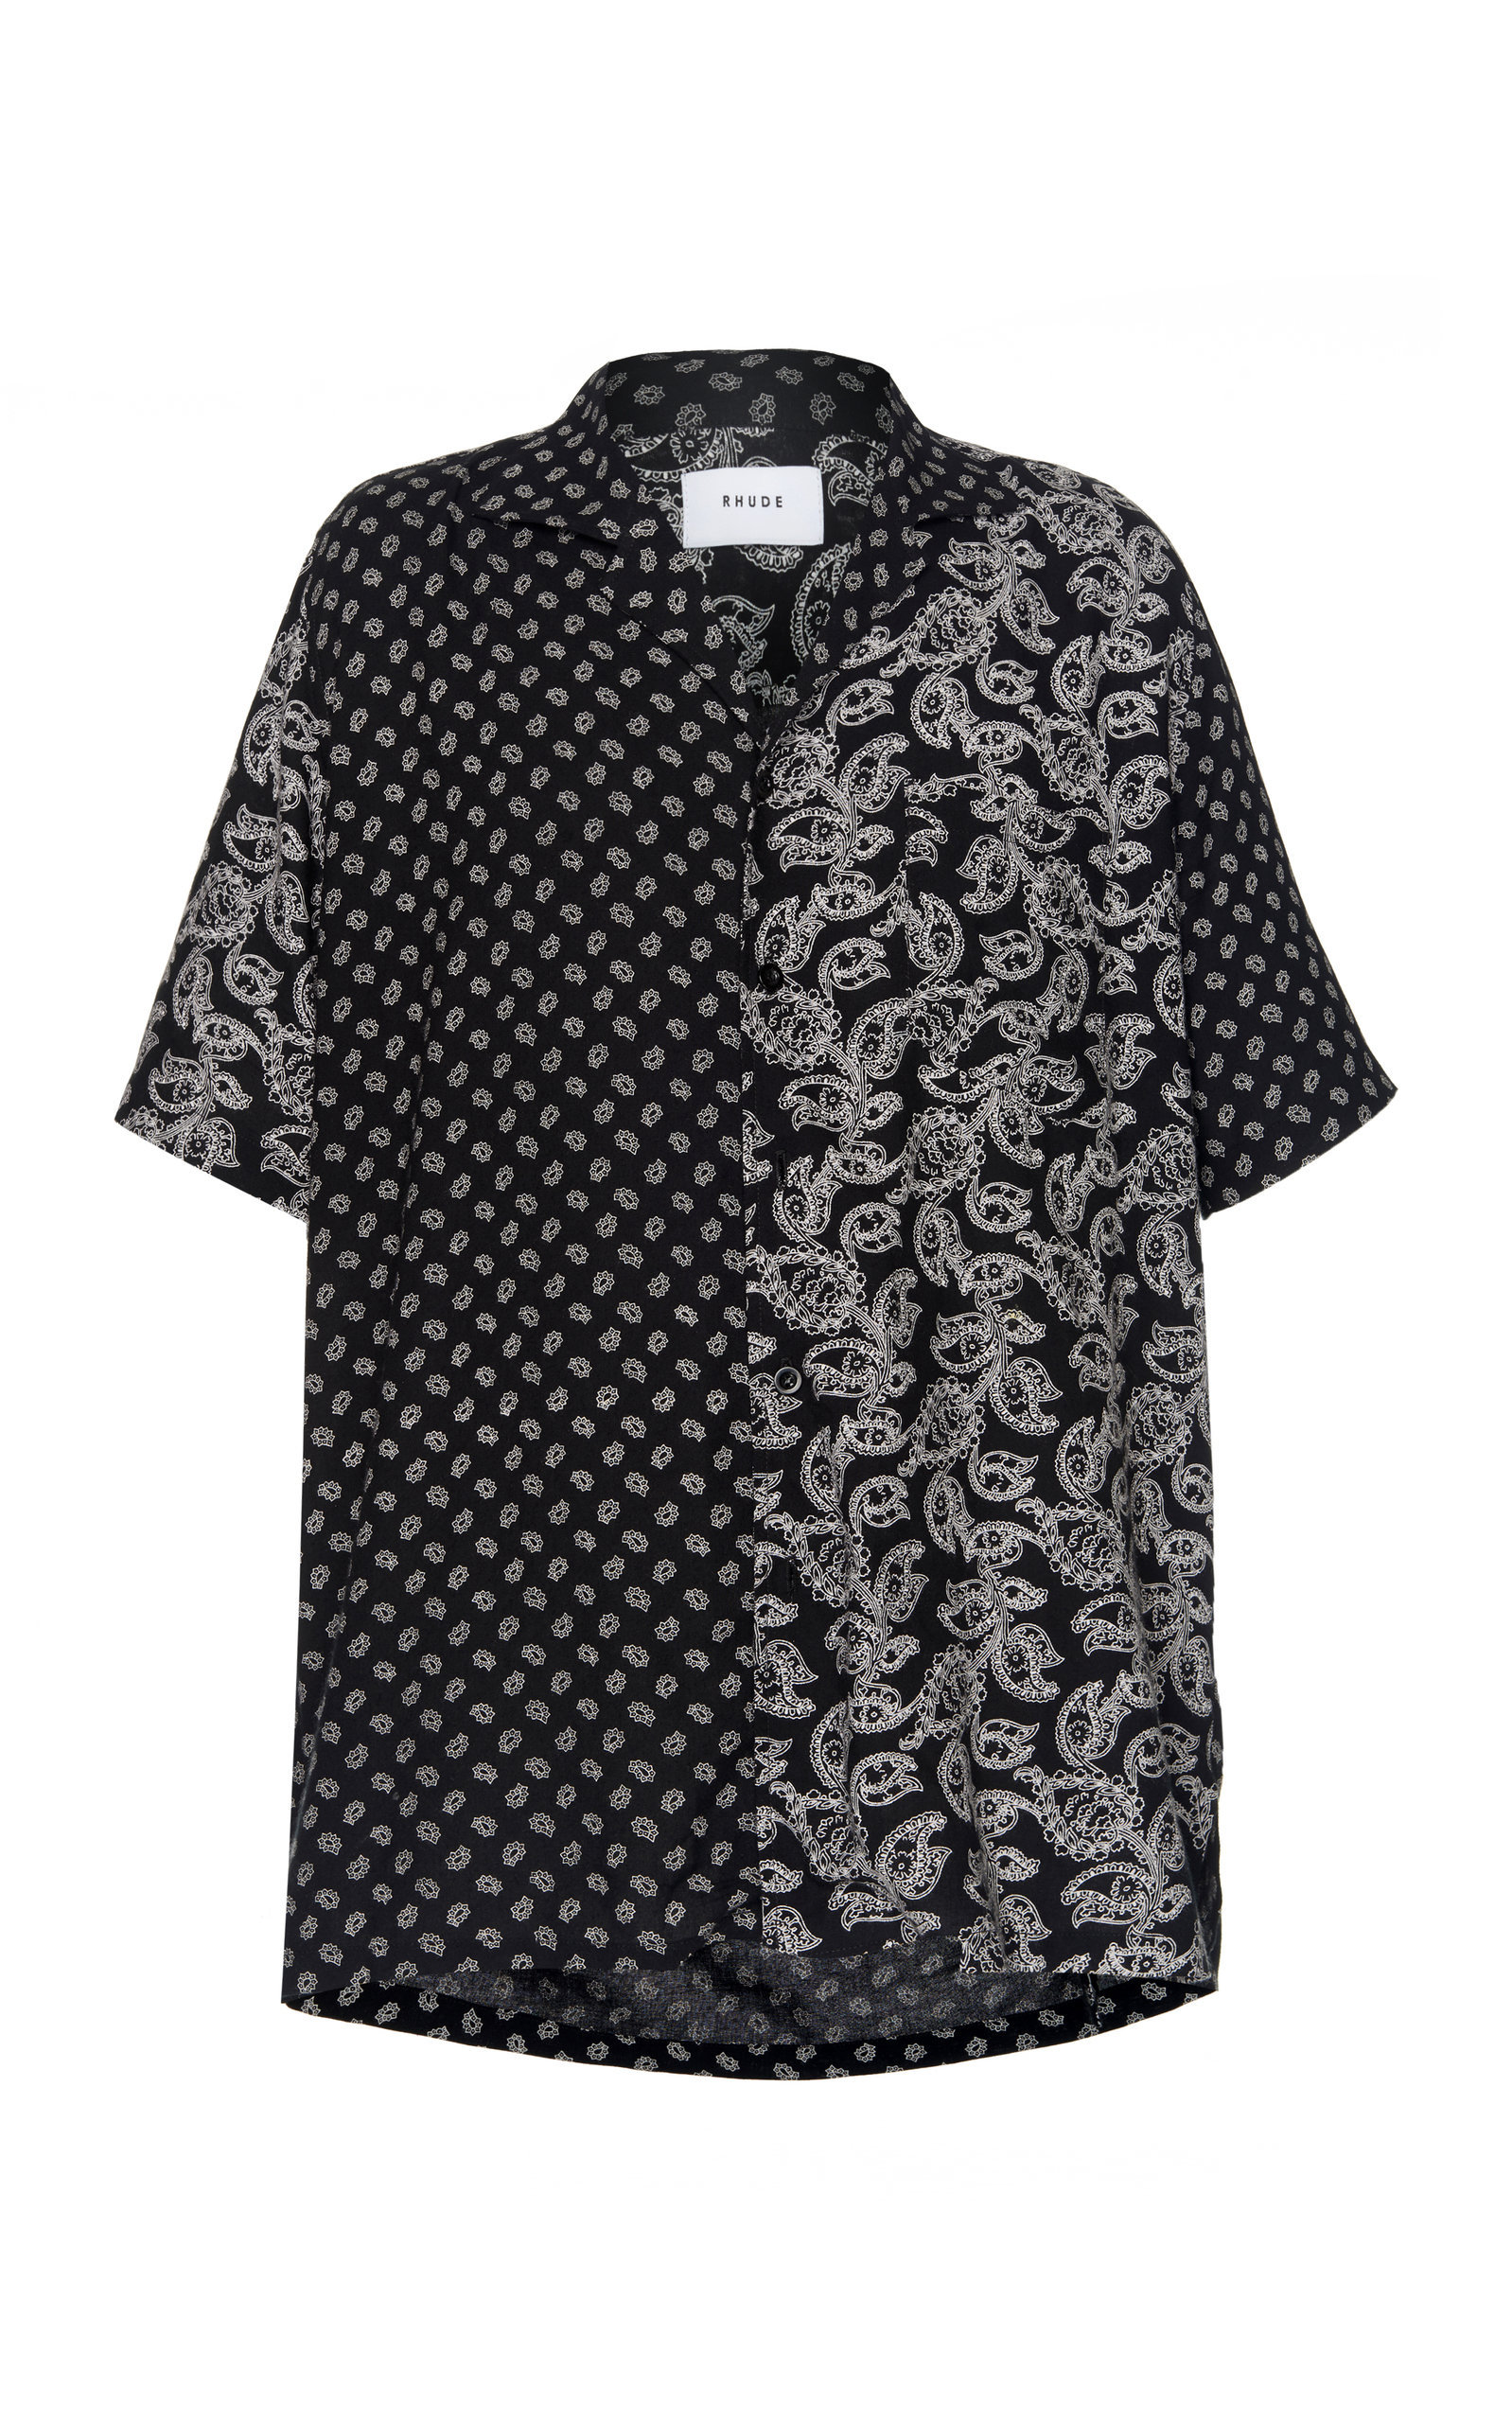 Rhude Bandana Hawaiian Shirt In Print | ModeSens